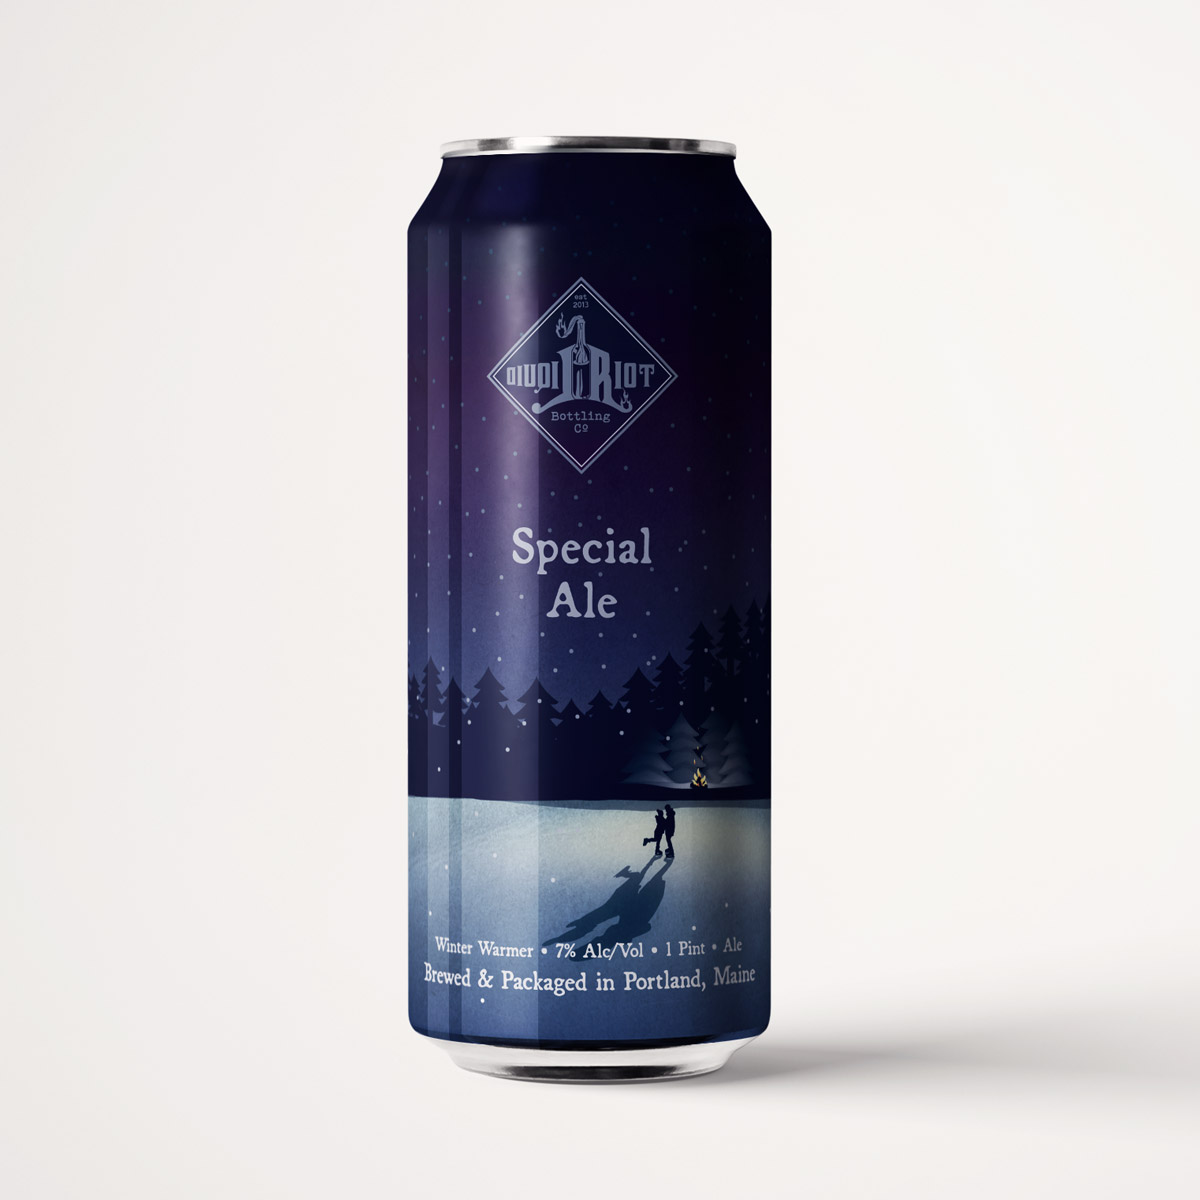 Liquid Riot – Special Ale